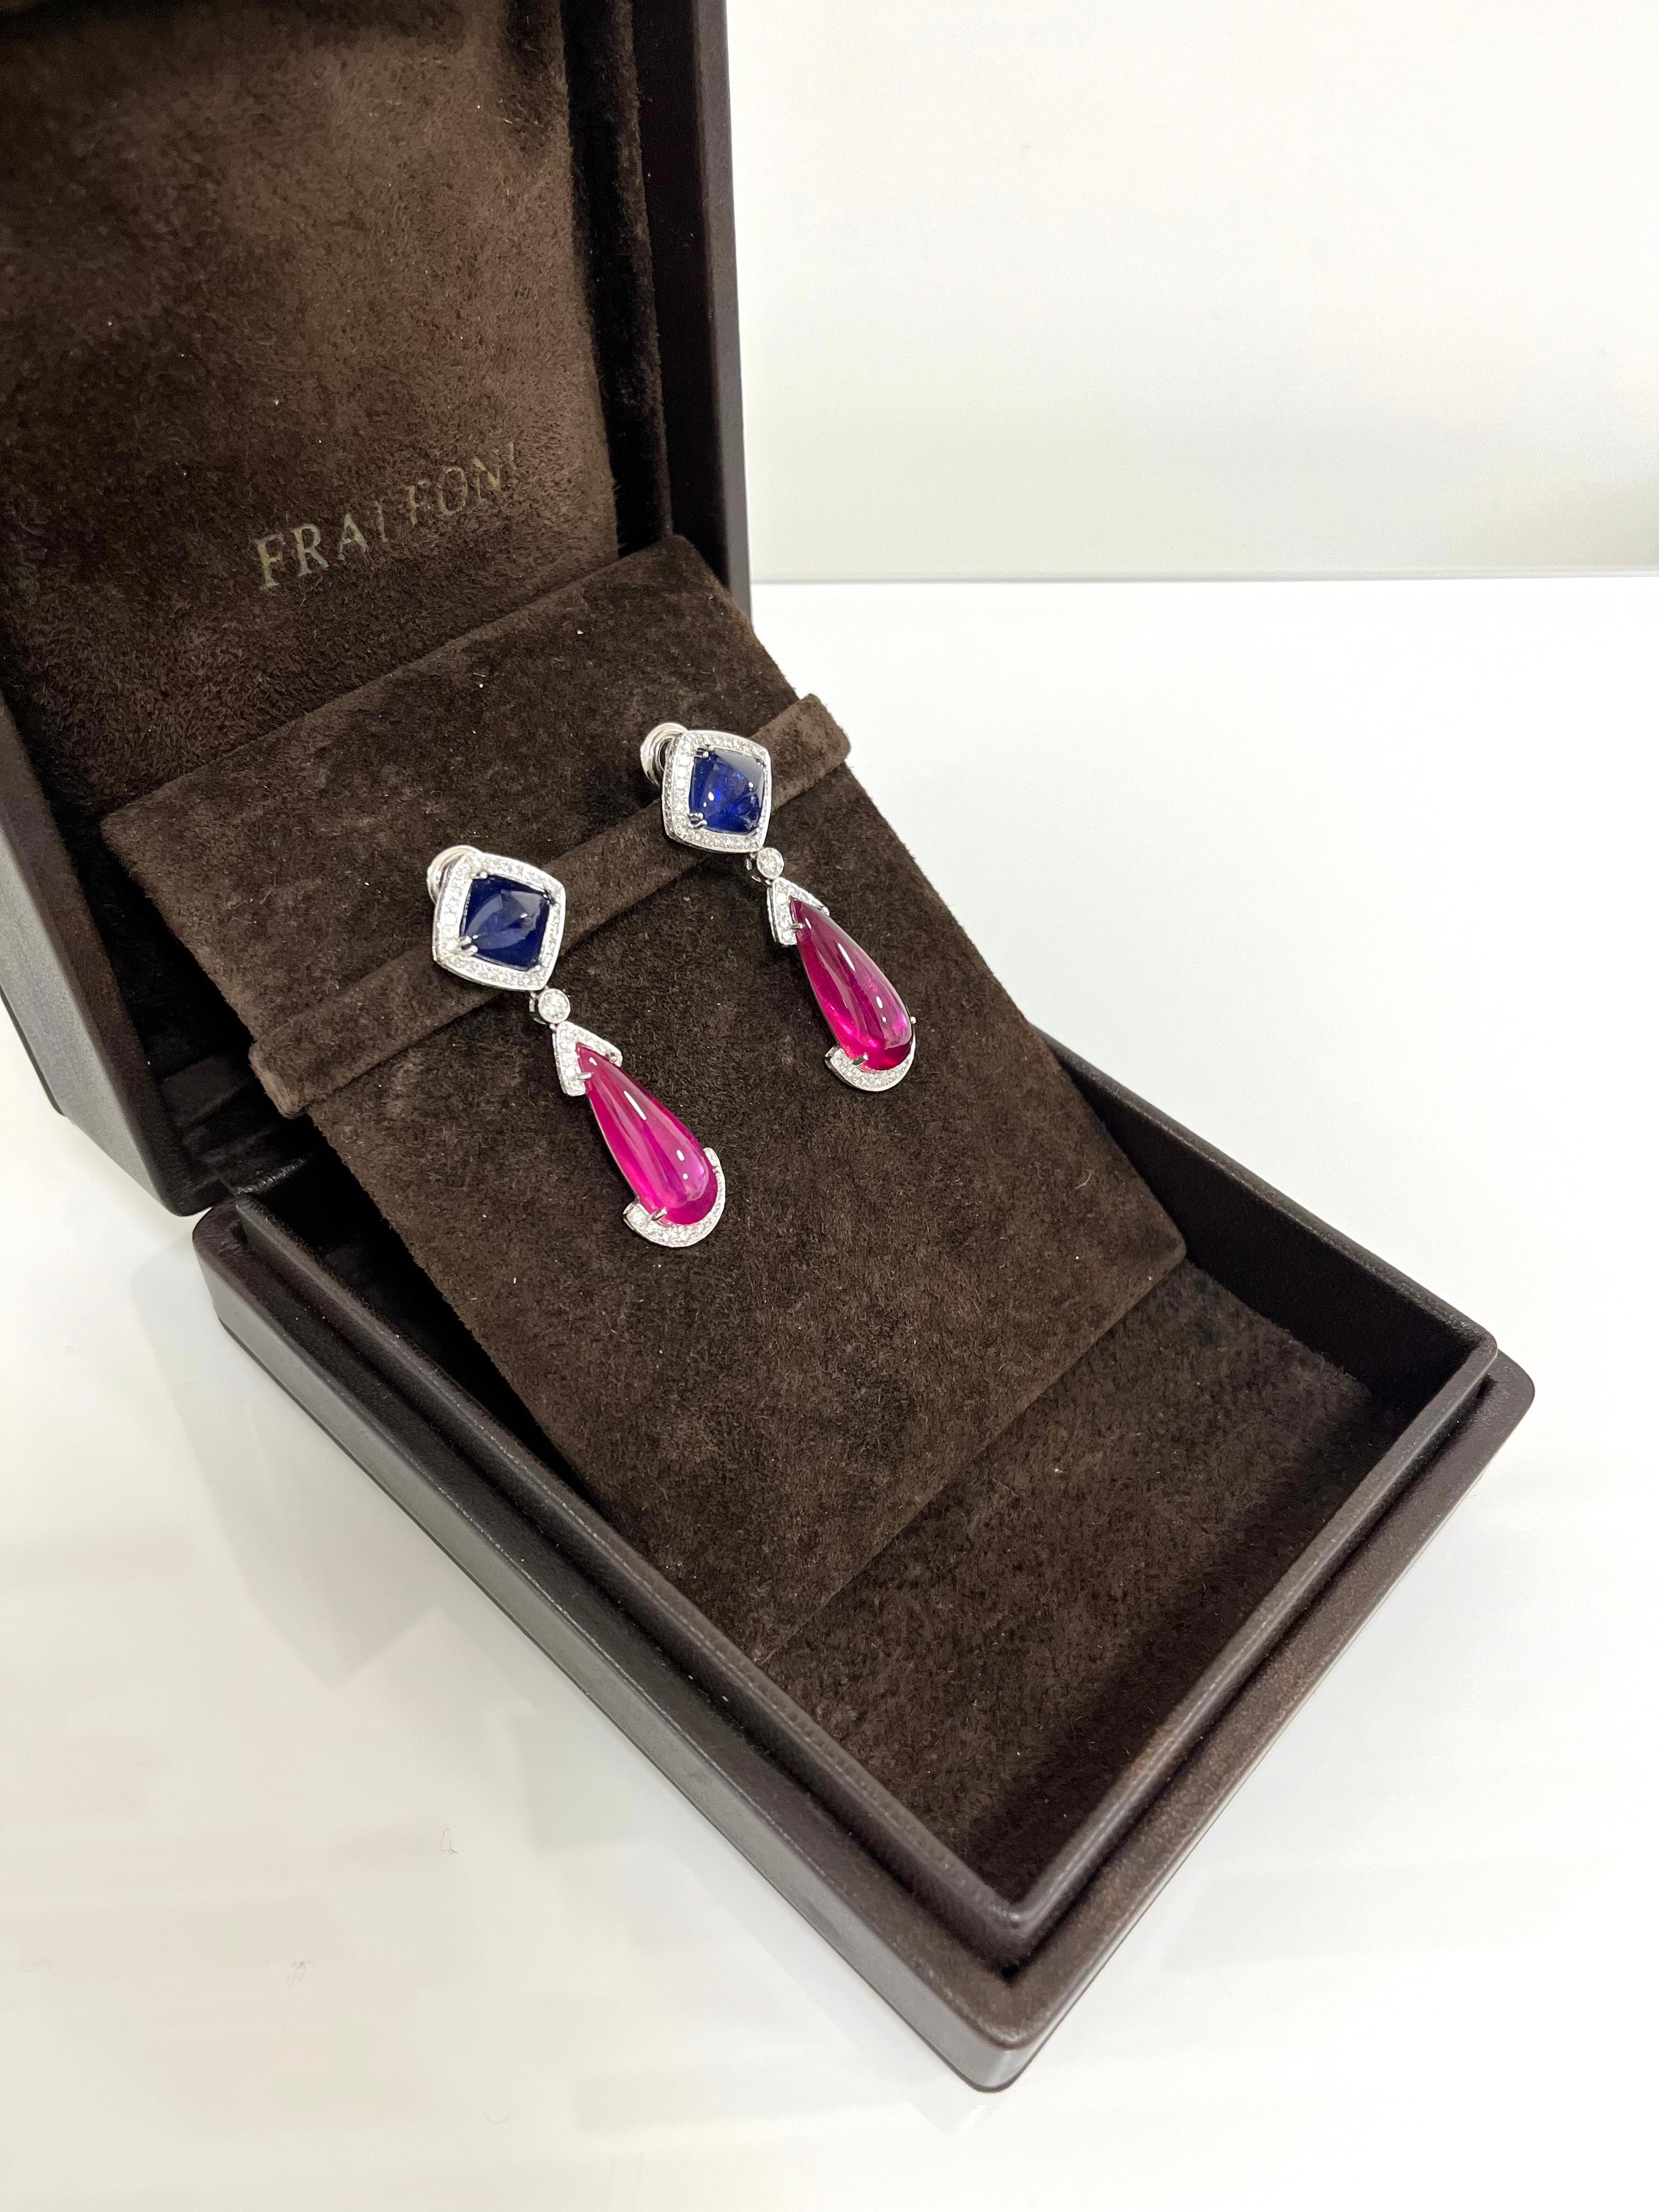 Fraleoni 18 Kt. White Gold Diamonds Sapphires Rubies Earrings For Sale 2